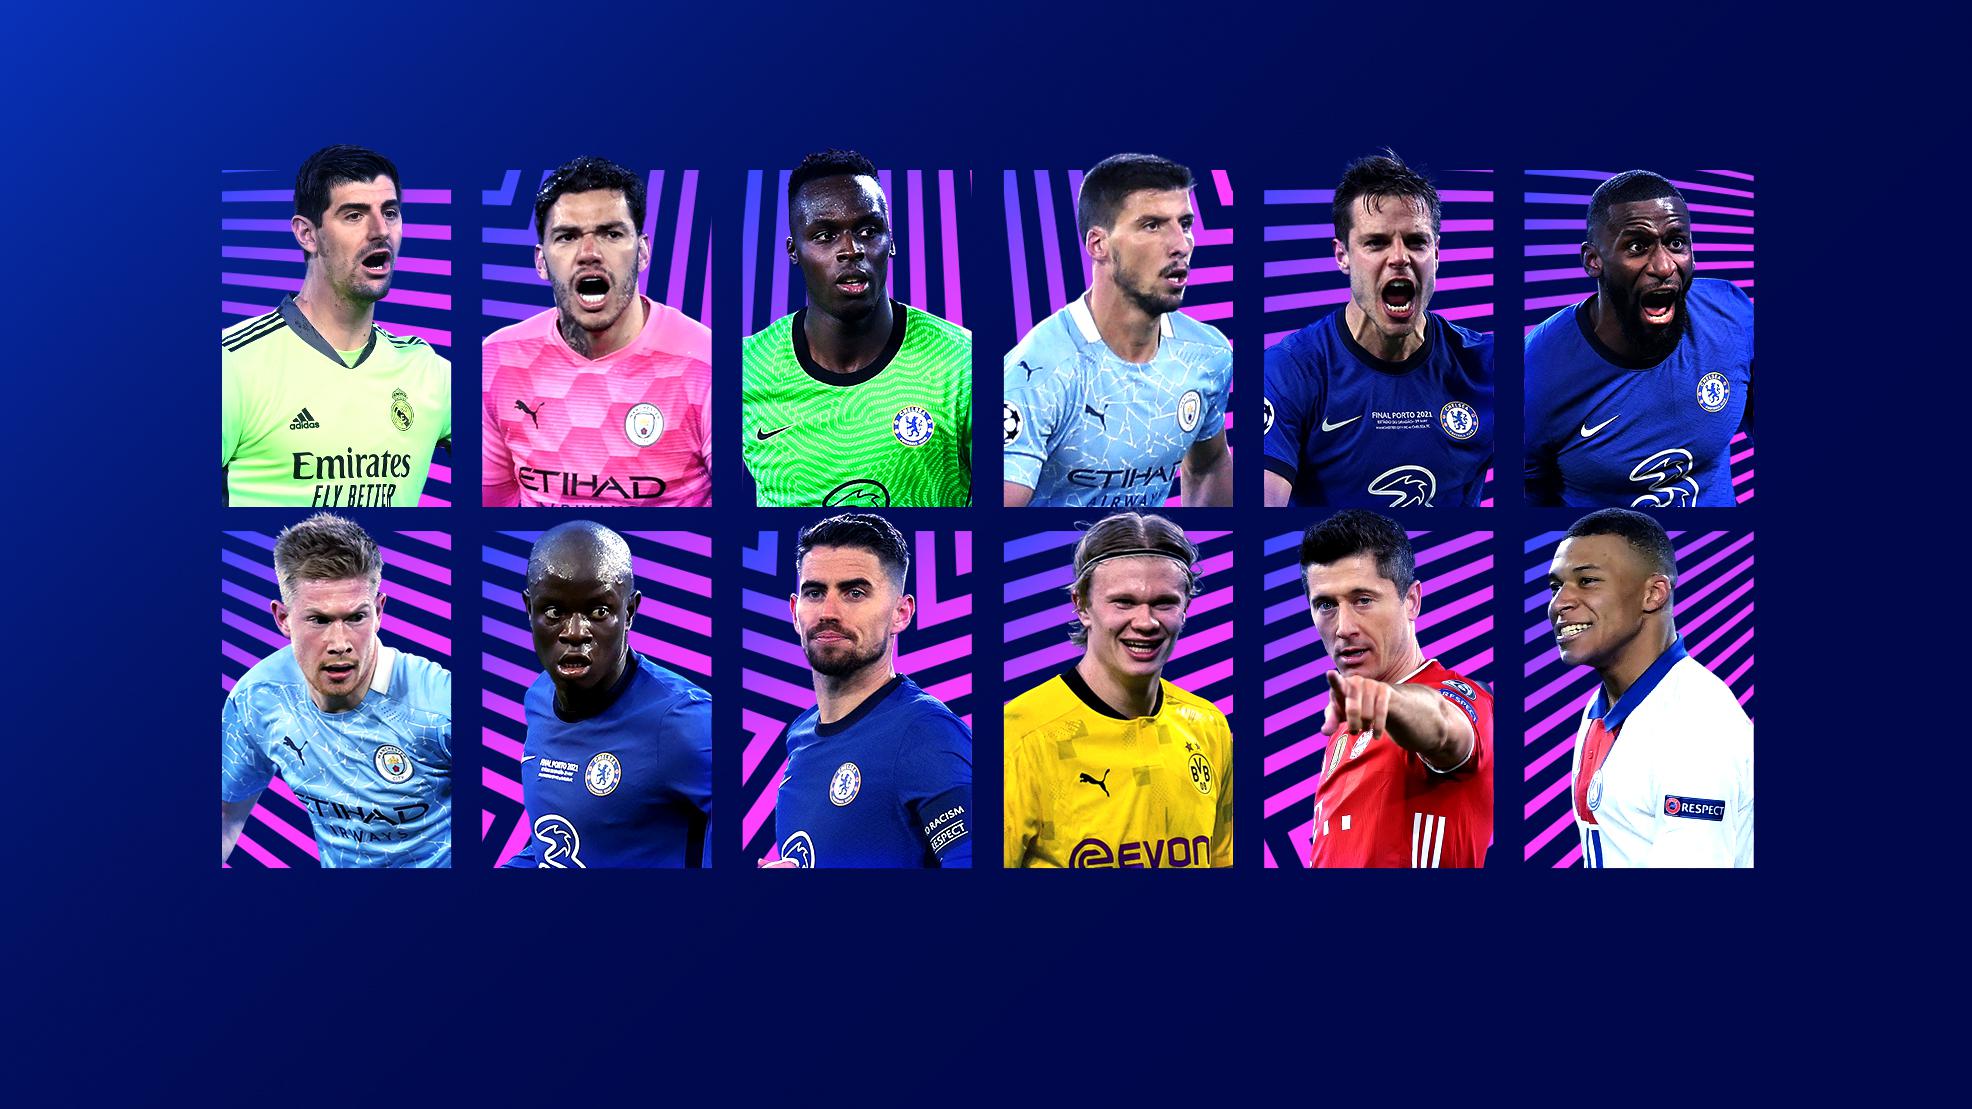 Daftar Lengkap Nominasi Penghargaan UEFA Musim 2020-2021, Tak Ada Messi atau Ronaldo Sama Sekali